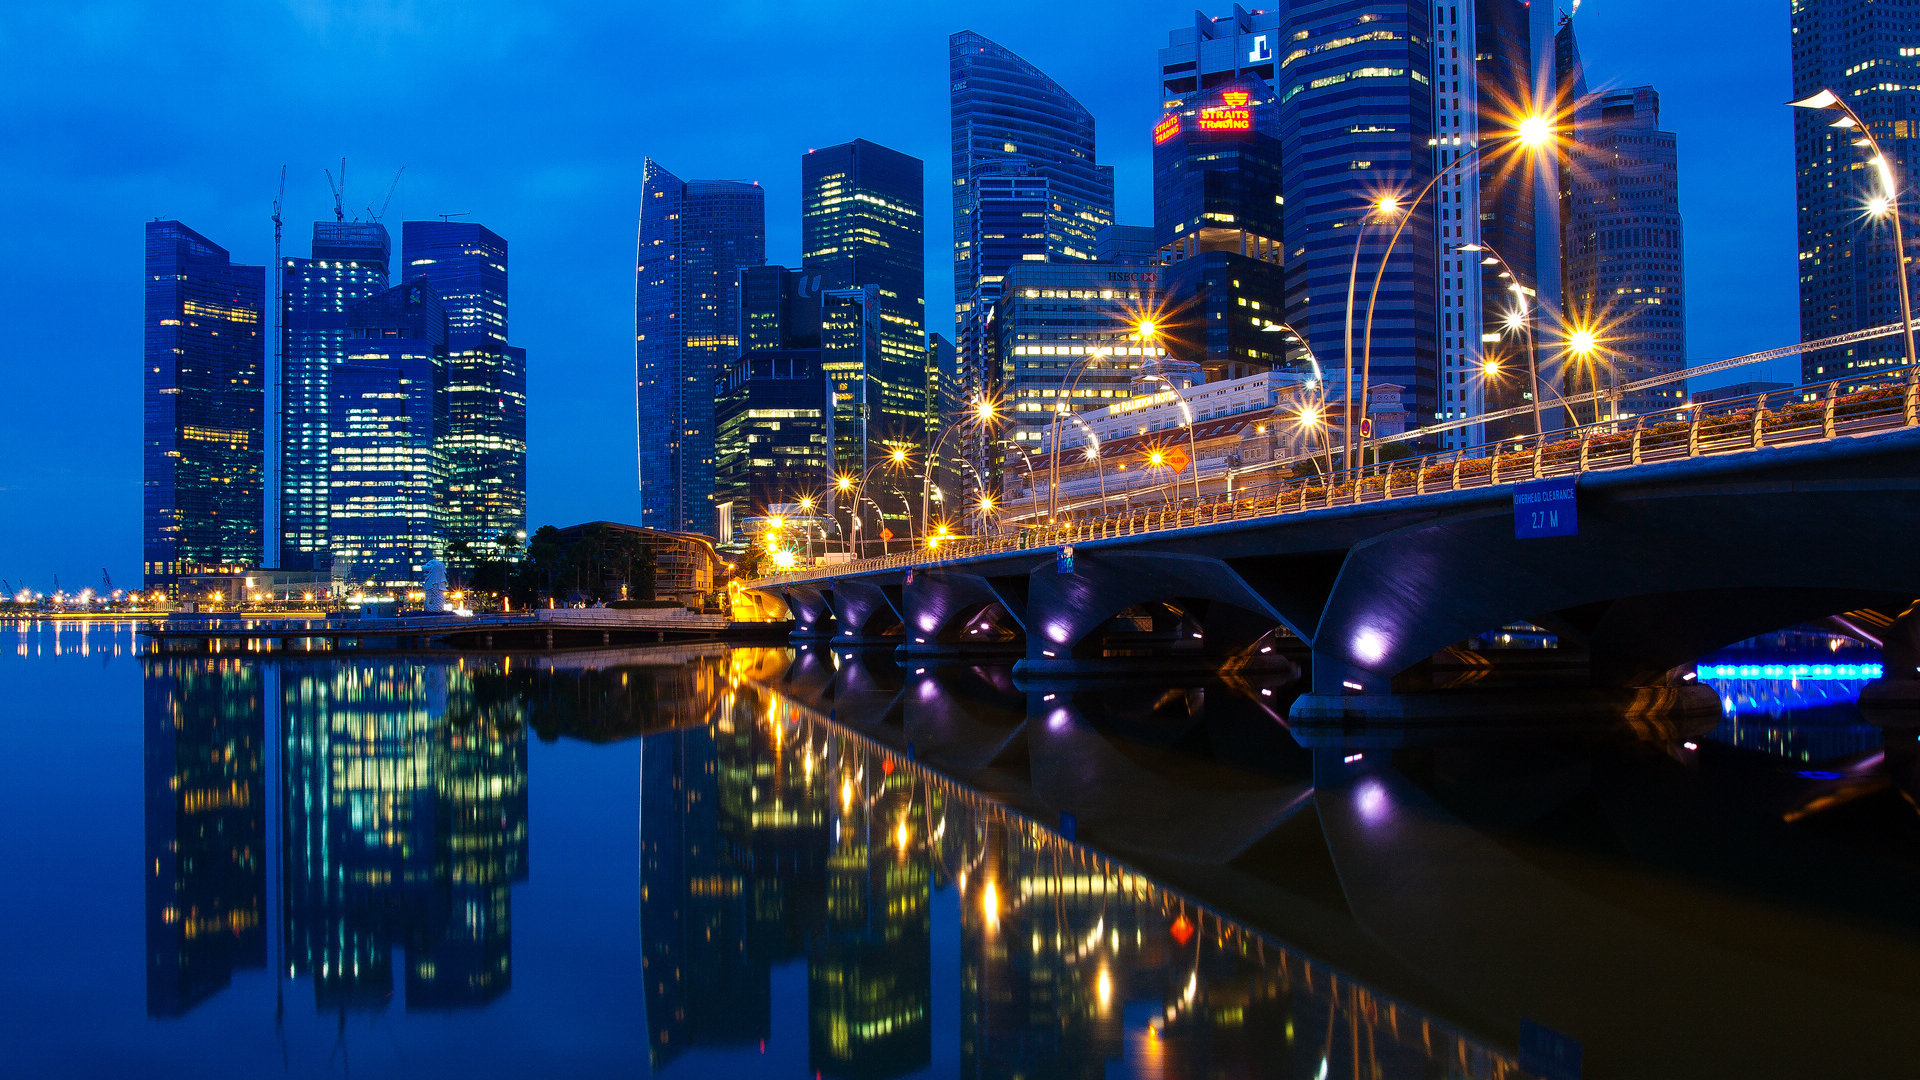 新加坡城市夜景壁纸,桌面背景图片,高清桌